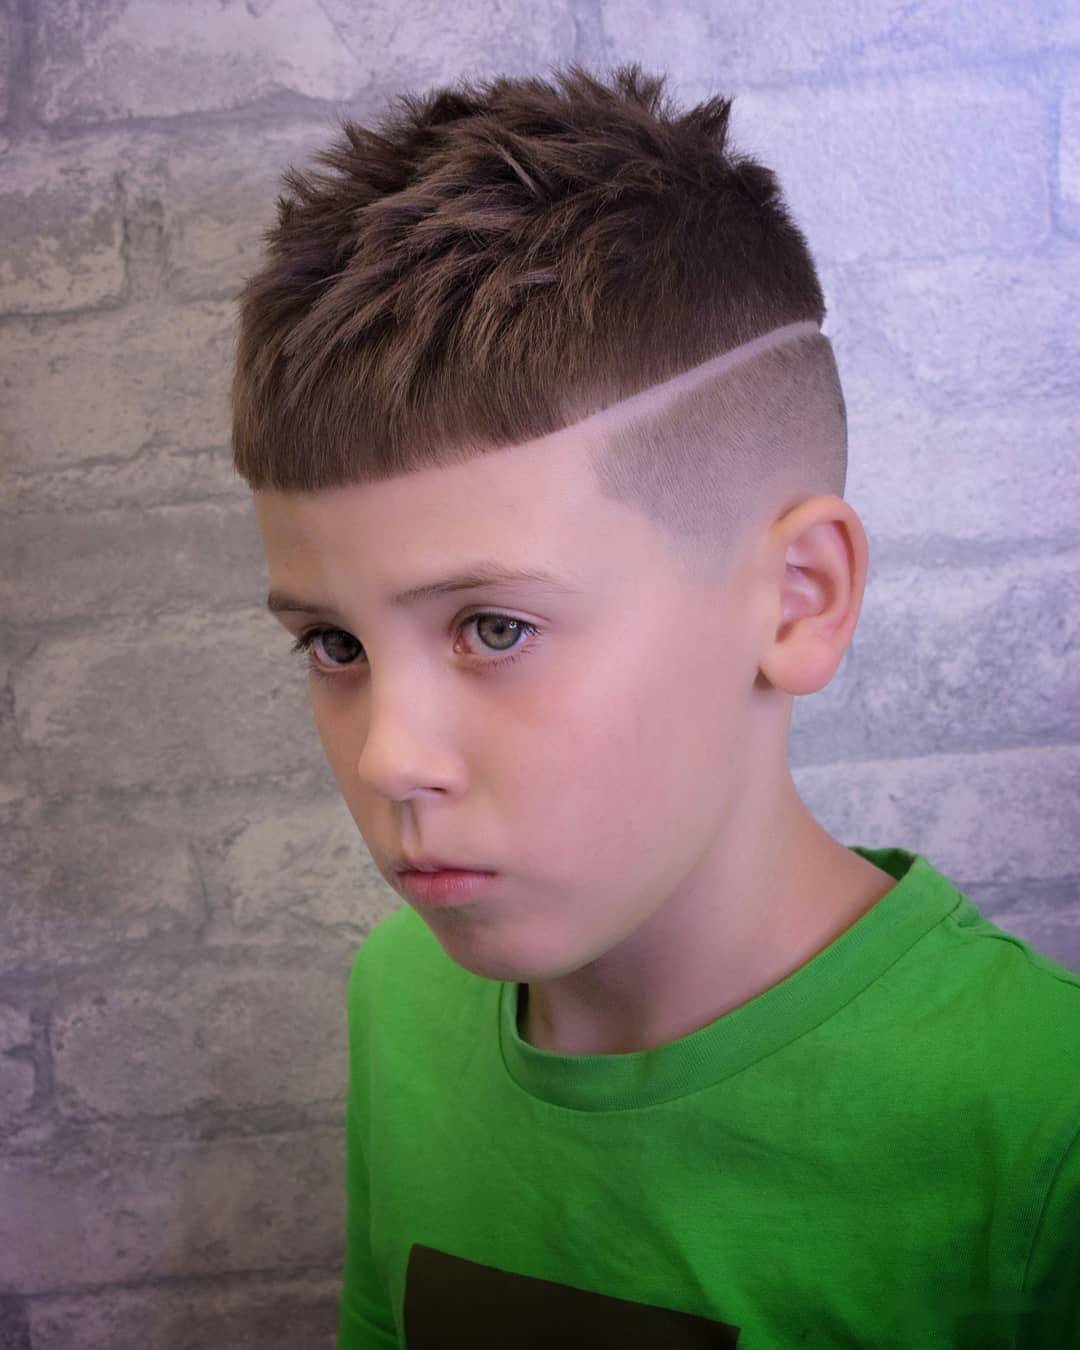 这款栗子头的小男孩发型,选择把头顶的头发打造出这种一块一块的纹理